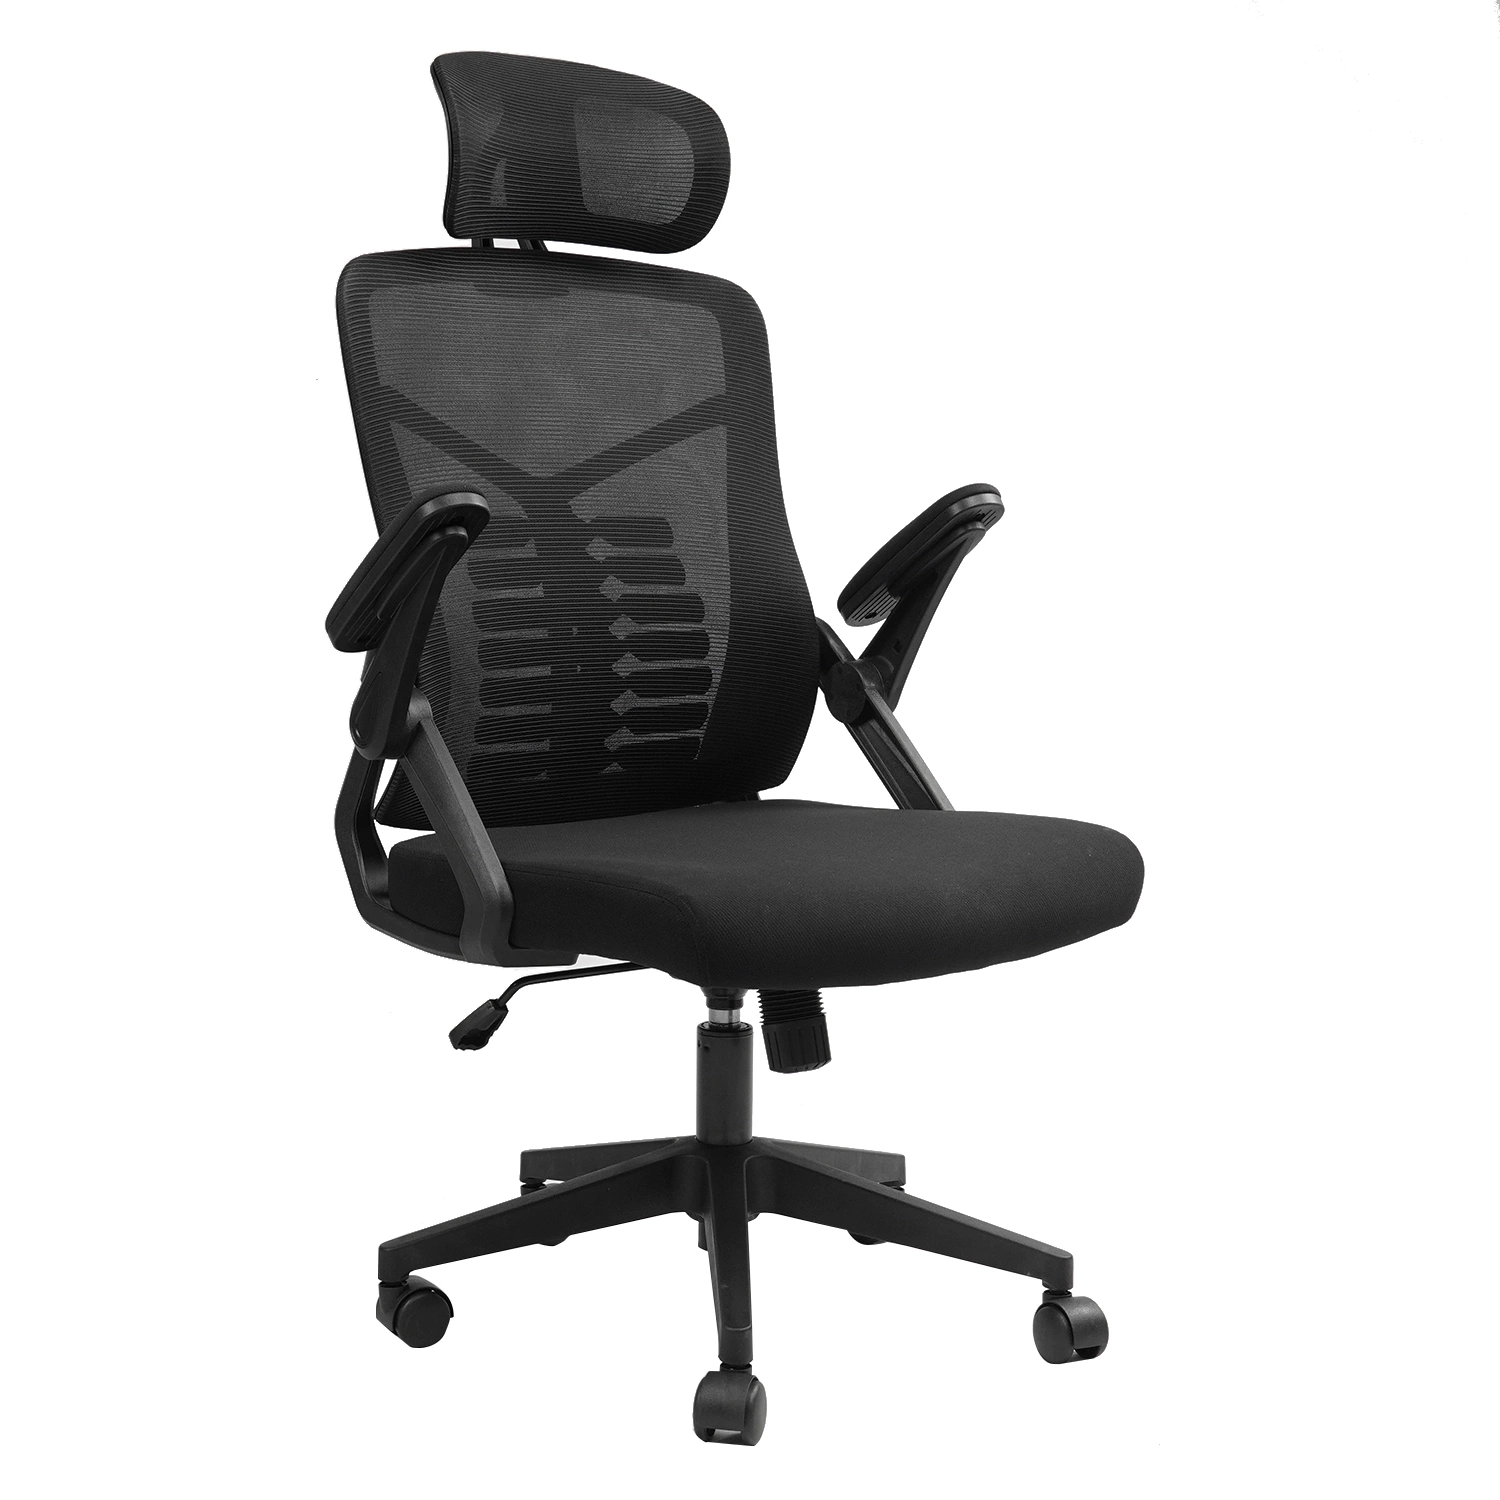 Меш-офисное кресло, эргономичное настольное кресло с регулируемой поясничной опорой и откидным подлокотником, сиденье Comfort Wide, кресло для выполнения задач с высокой спинкой